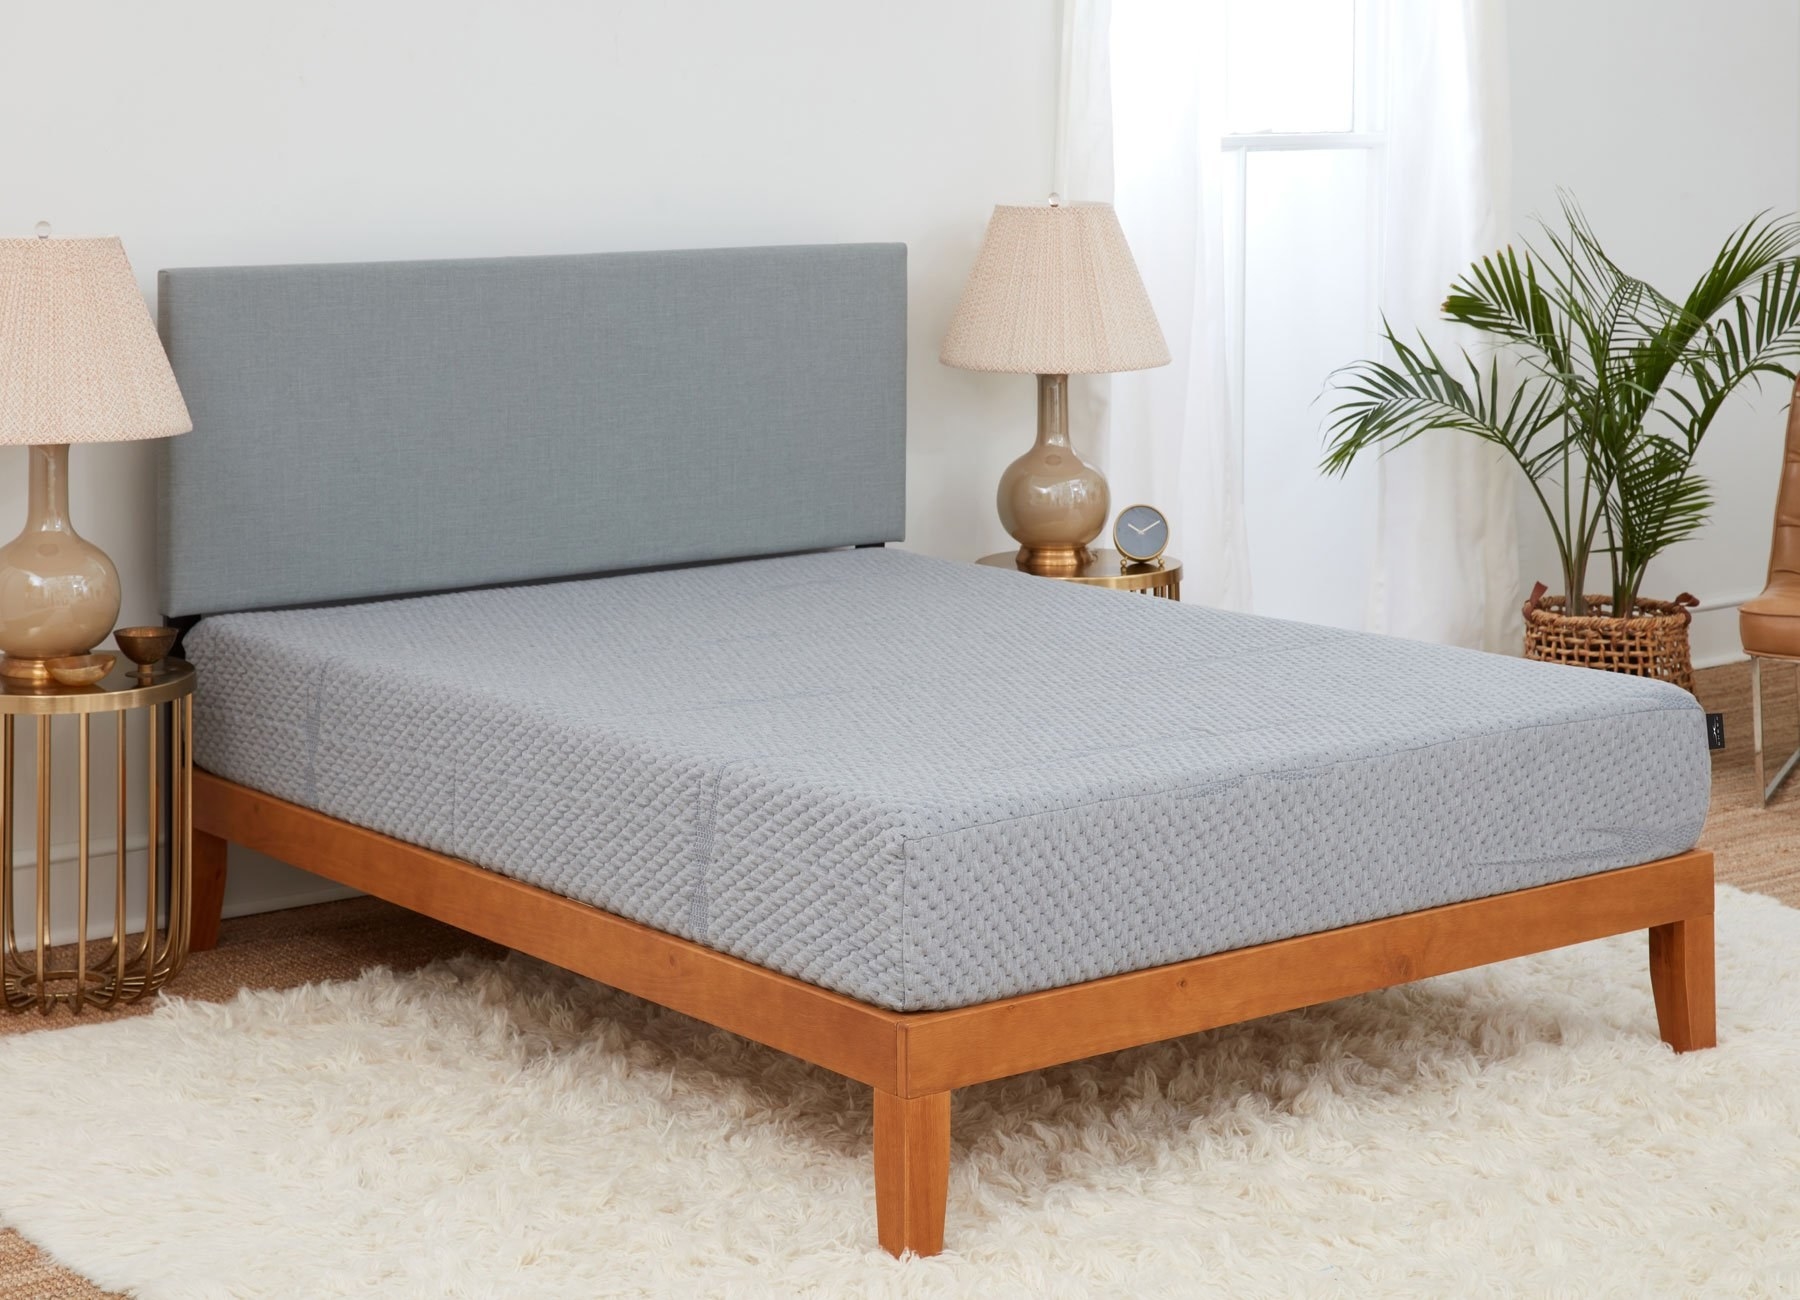 a grey foam mattress